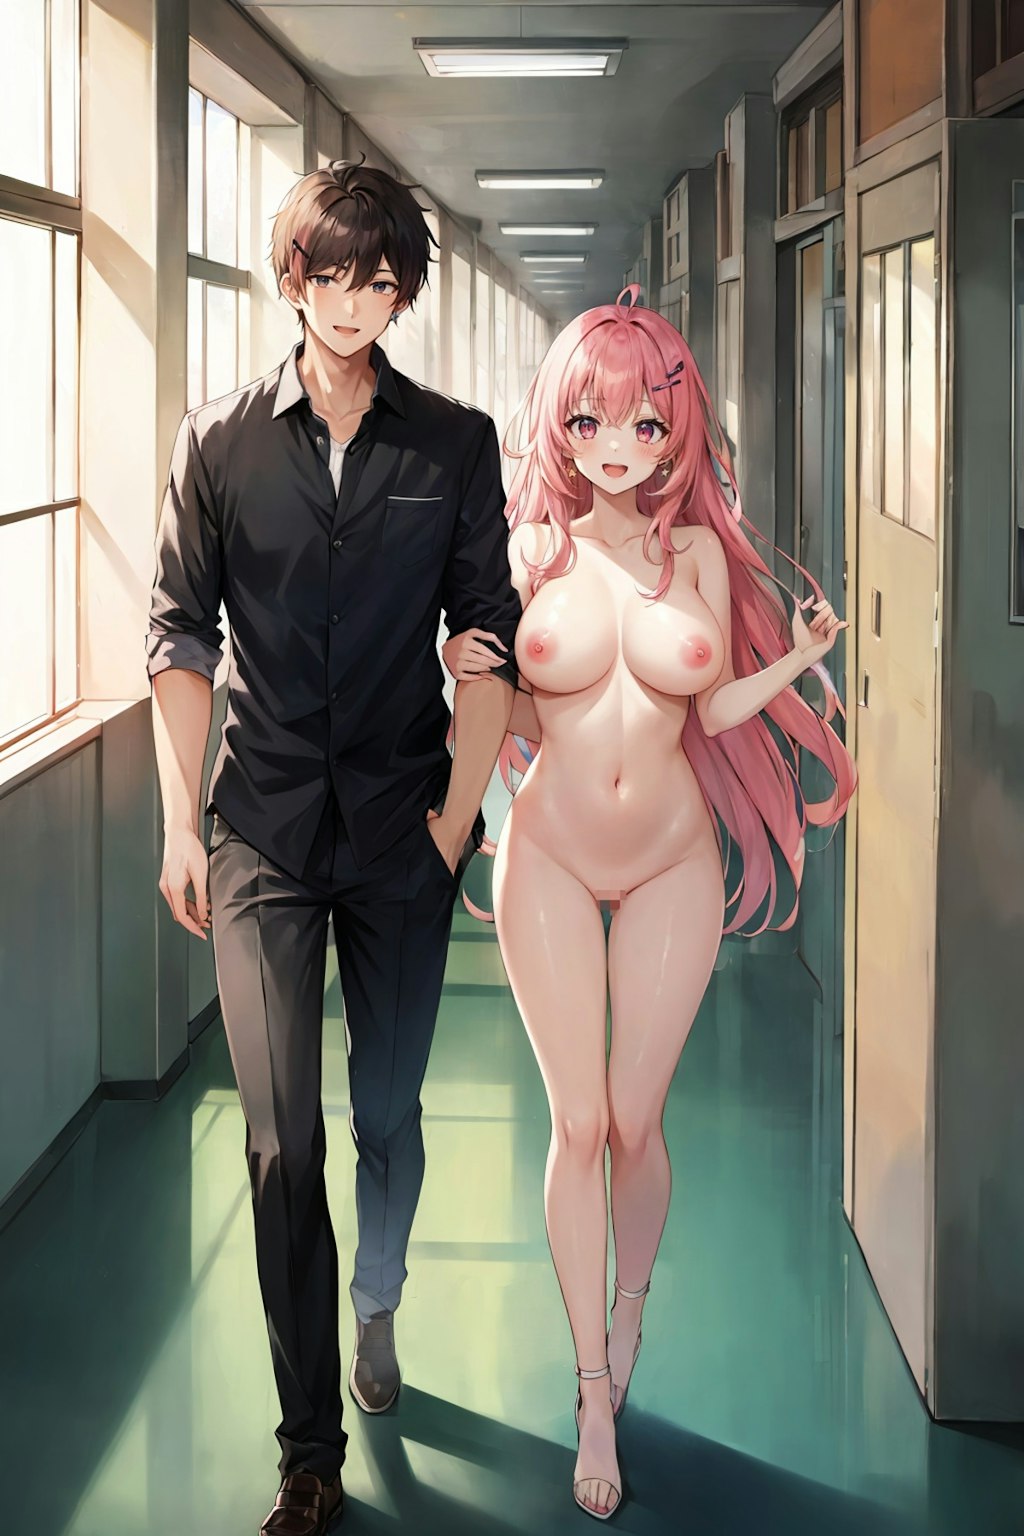 [リクエスト]学校の廊下で男(制服)女(裸)が歩いている